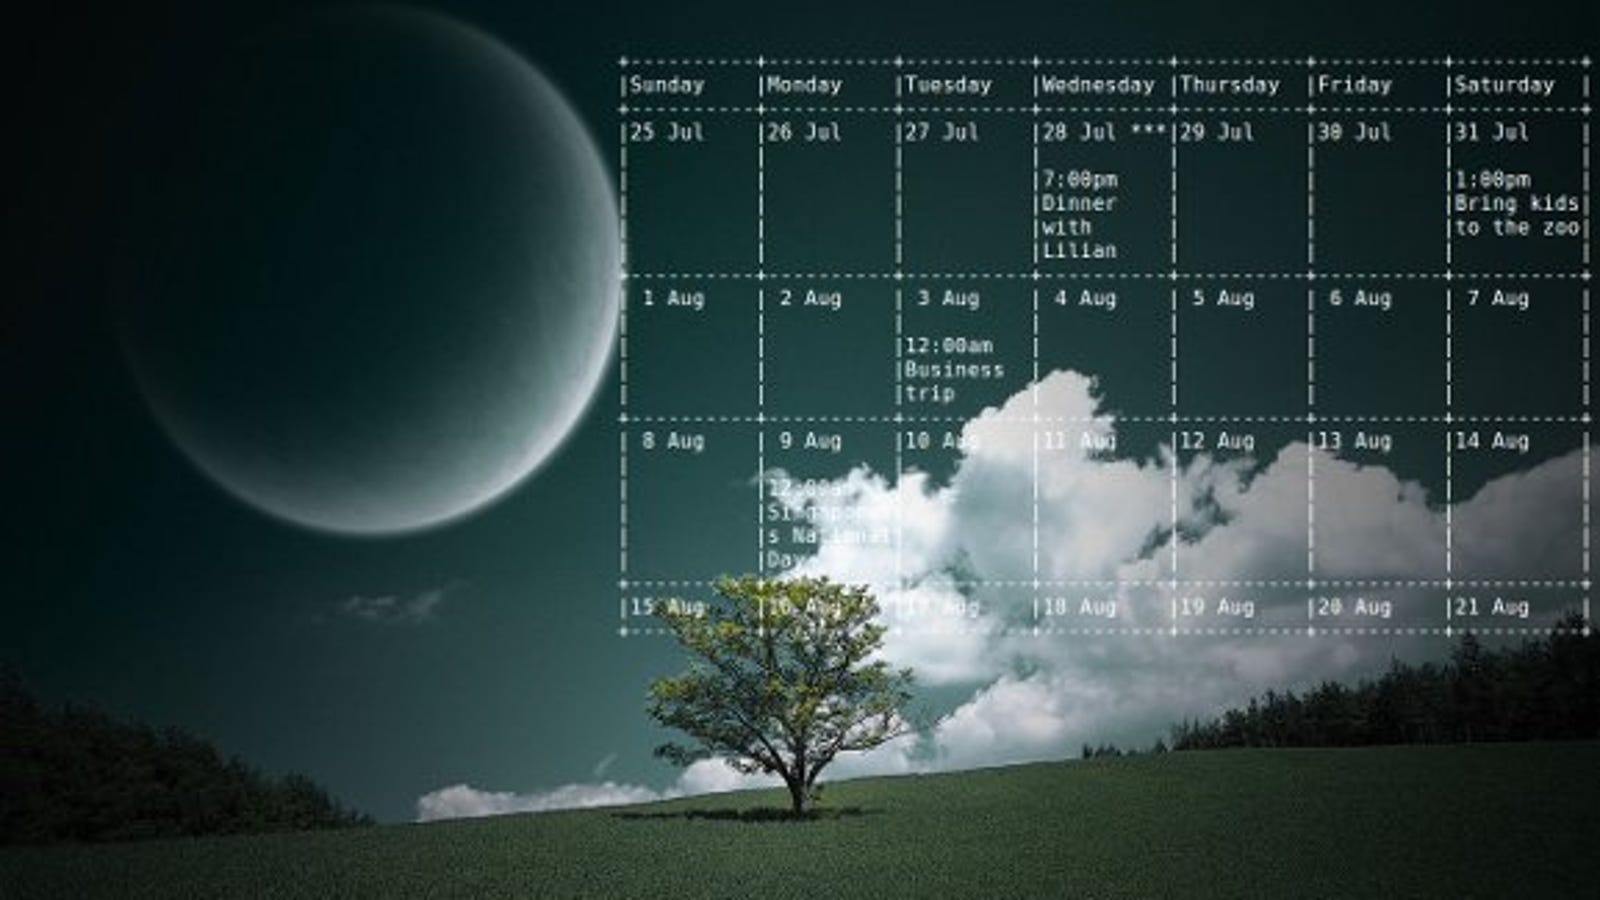 Embed Google Calendar on Your Linux Desktop